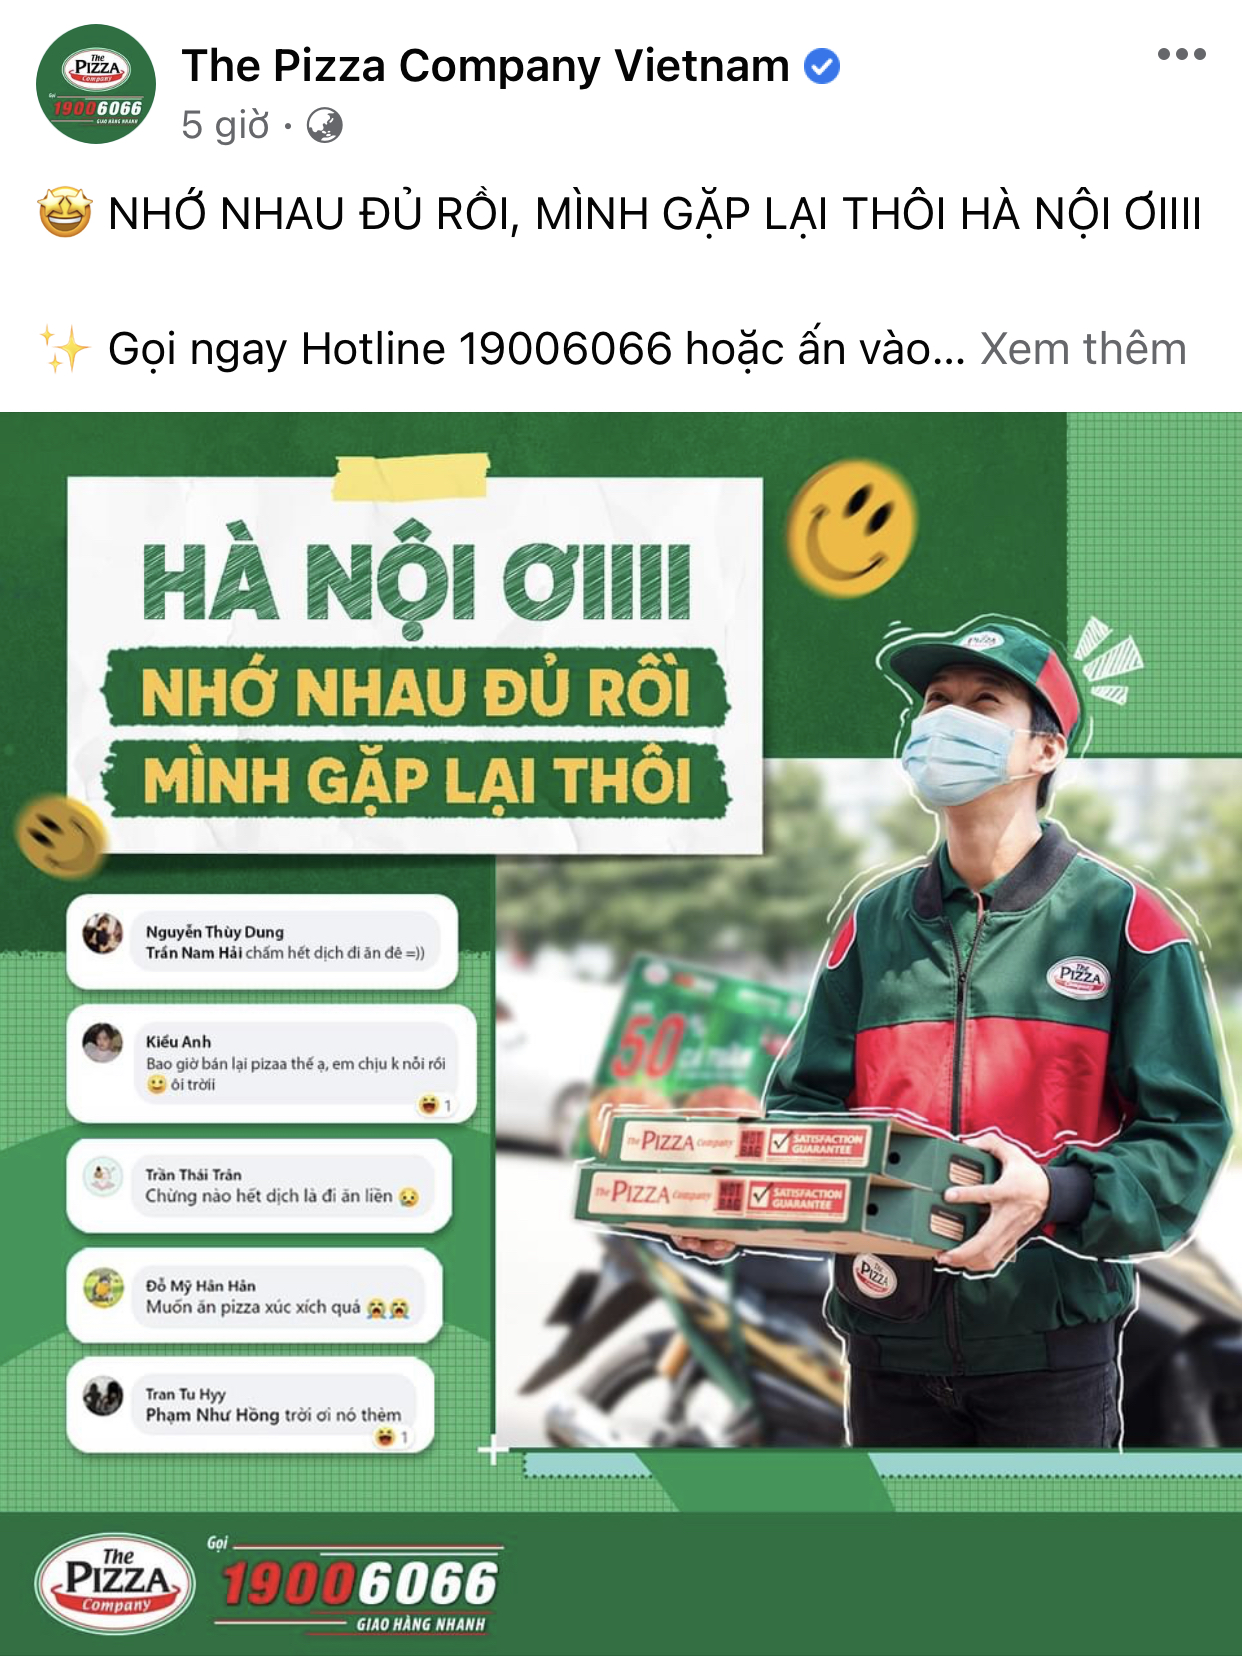 HOT: 10 hãng thức ăn nhanh đình đám nhất Việt Nam thông báo thời gian mở cửa trở lại, Sài Gòn có 2 nơi duy nhất comeback - Ảnh 20.